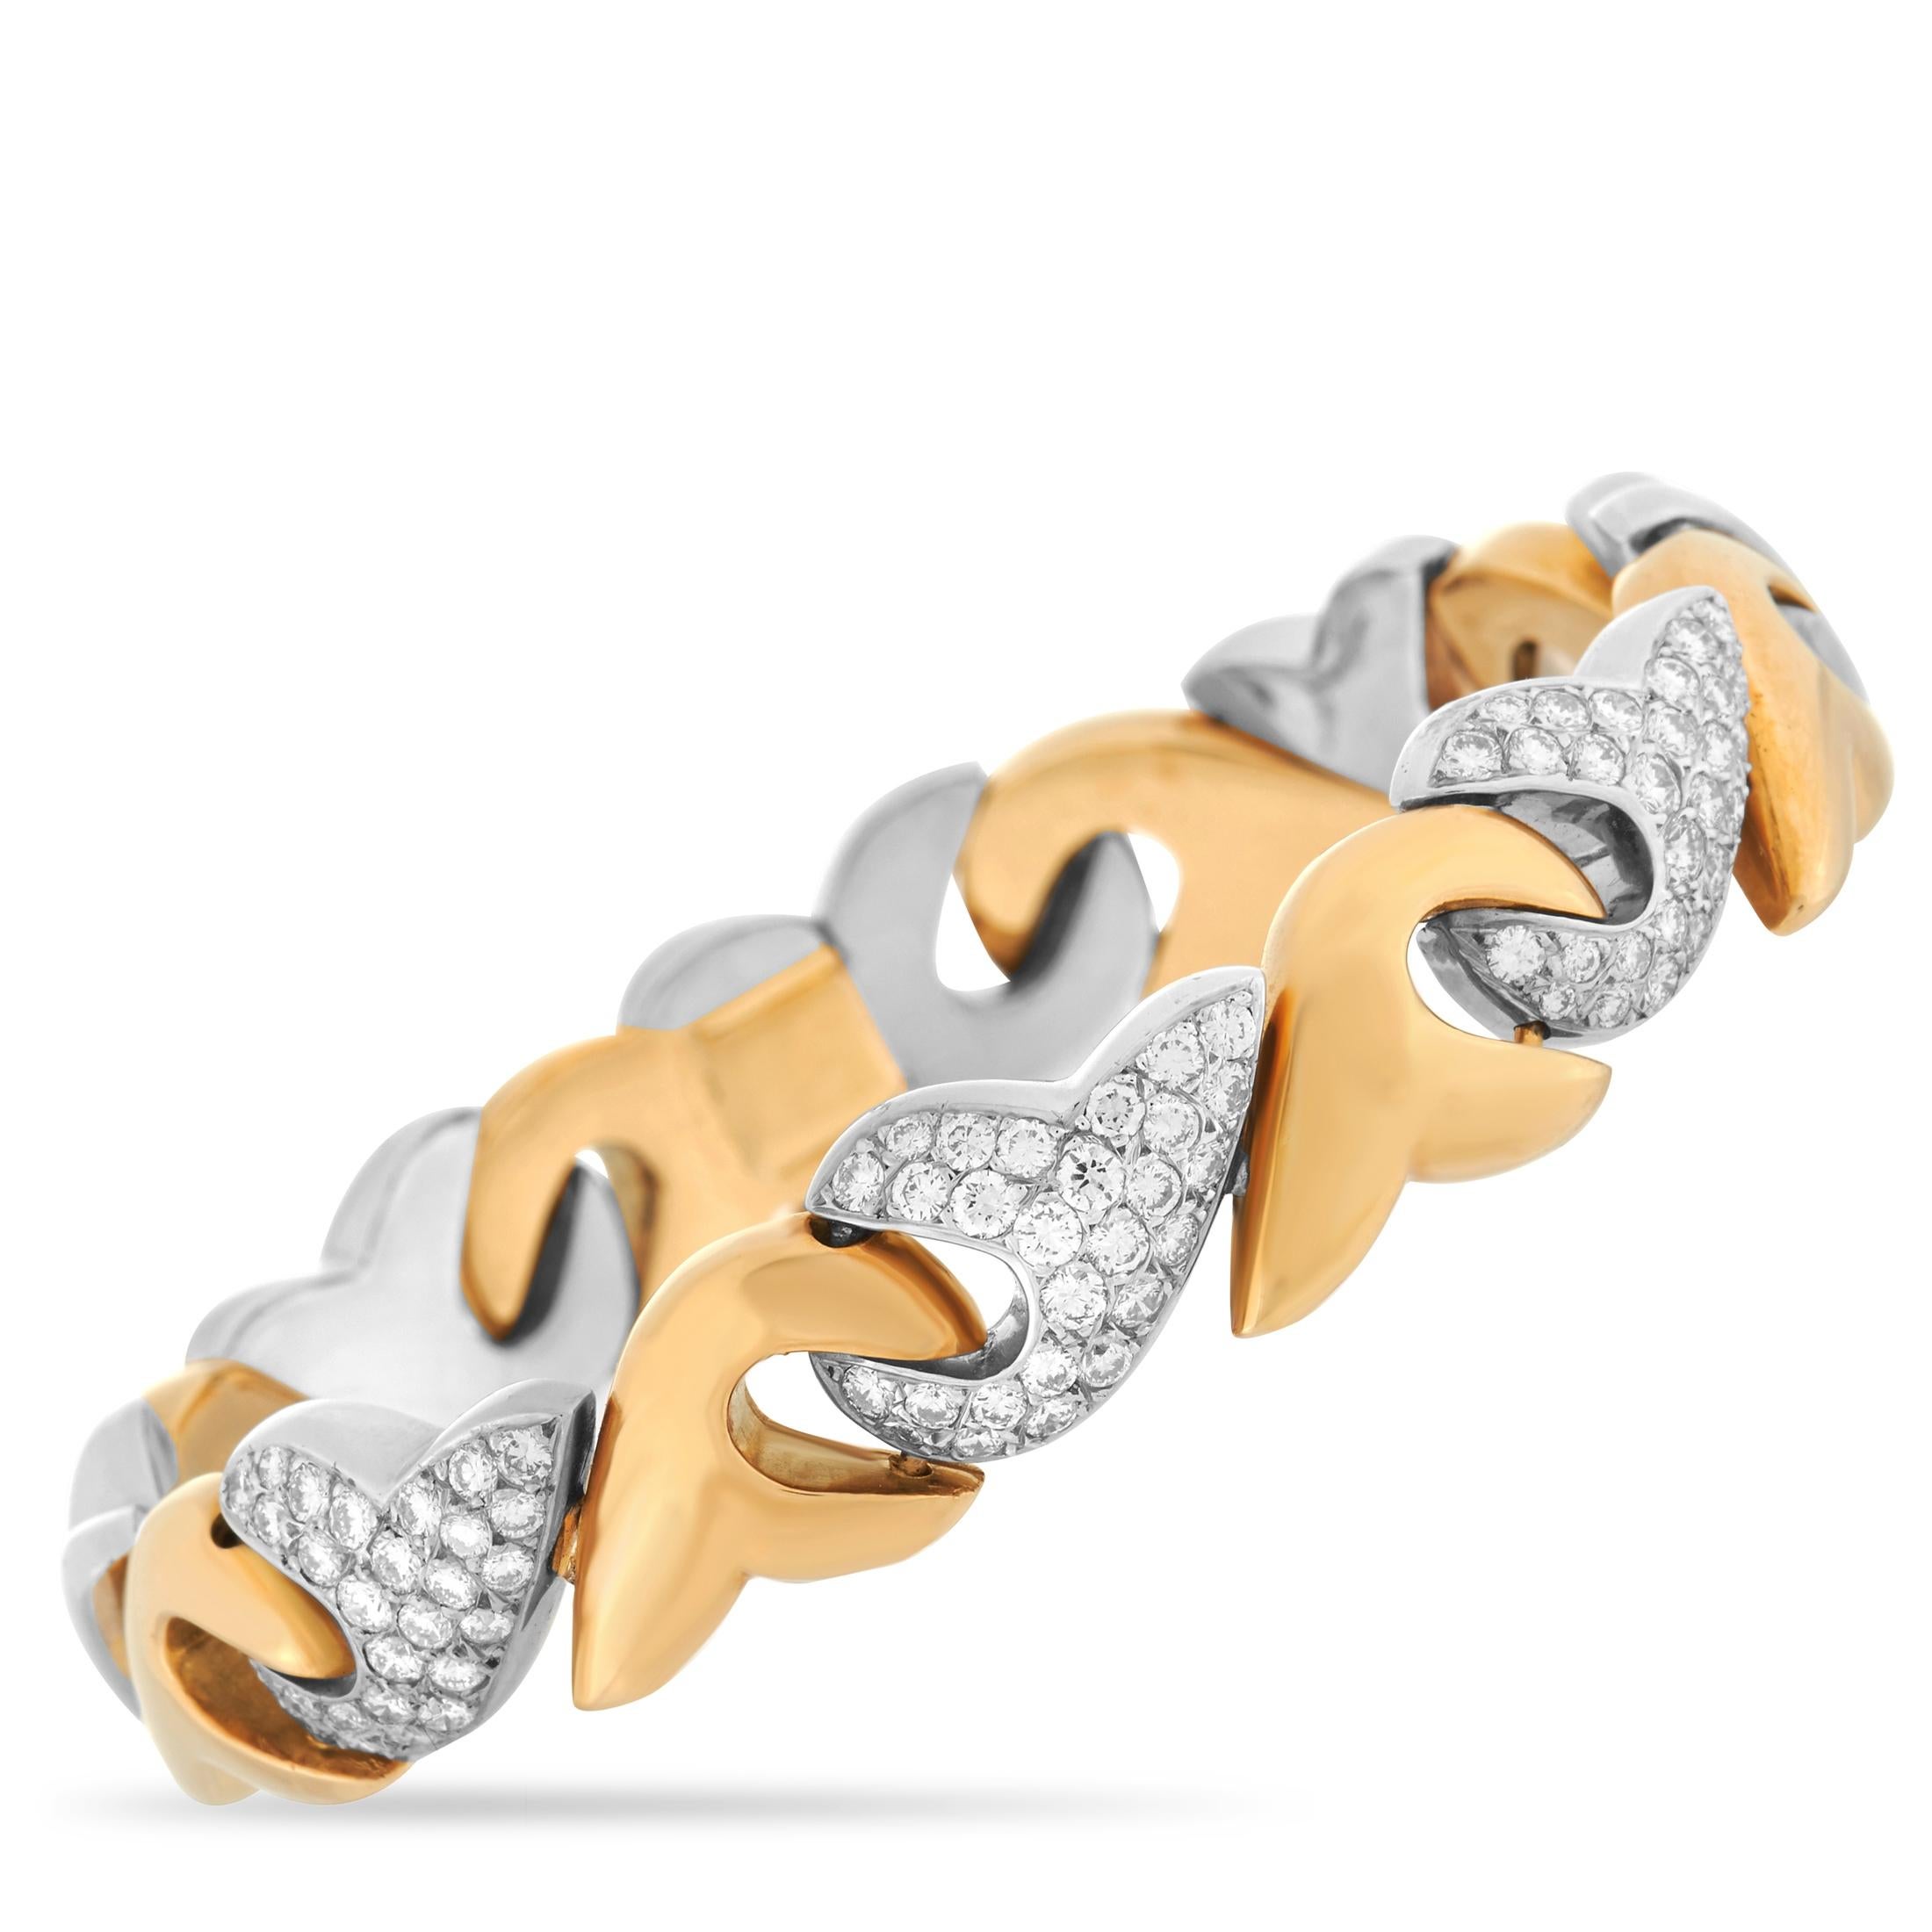 gold xo necklace and bracelet set